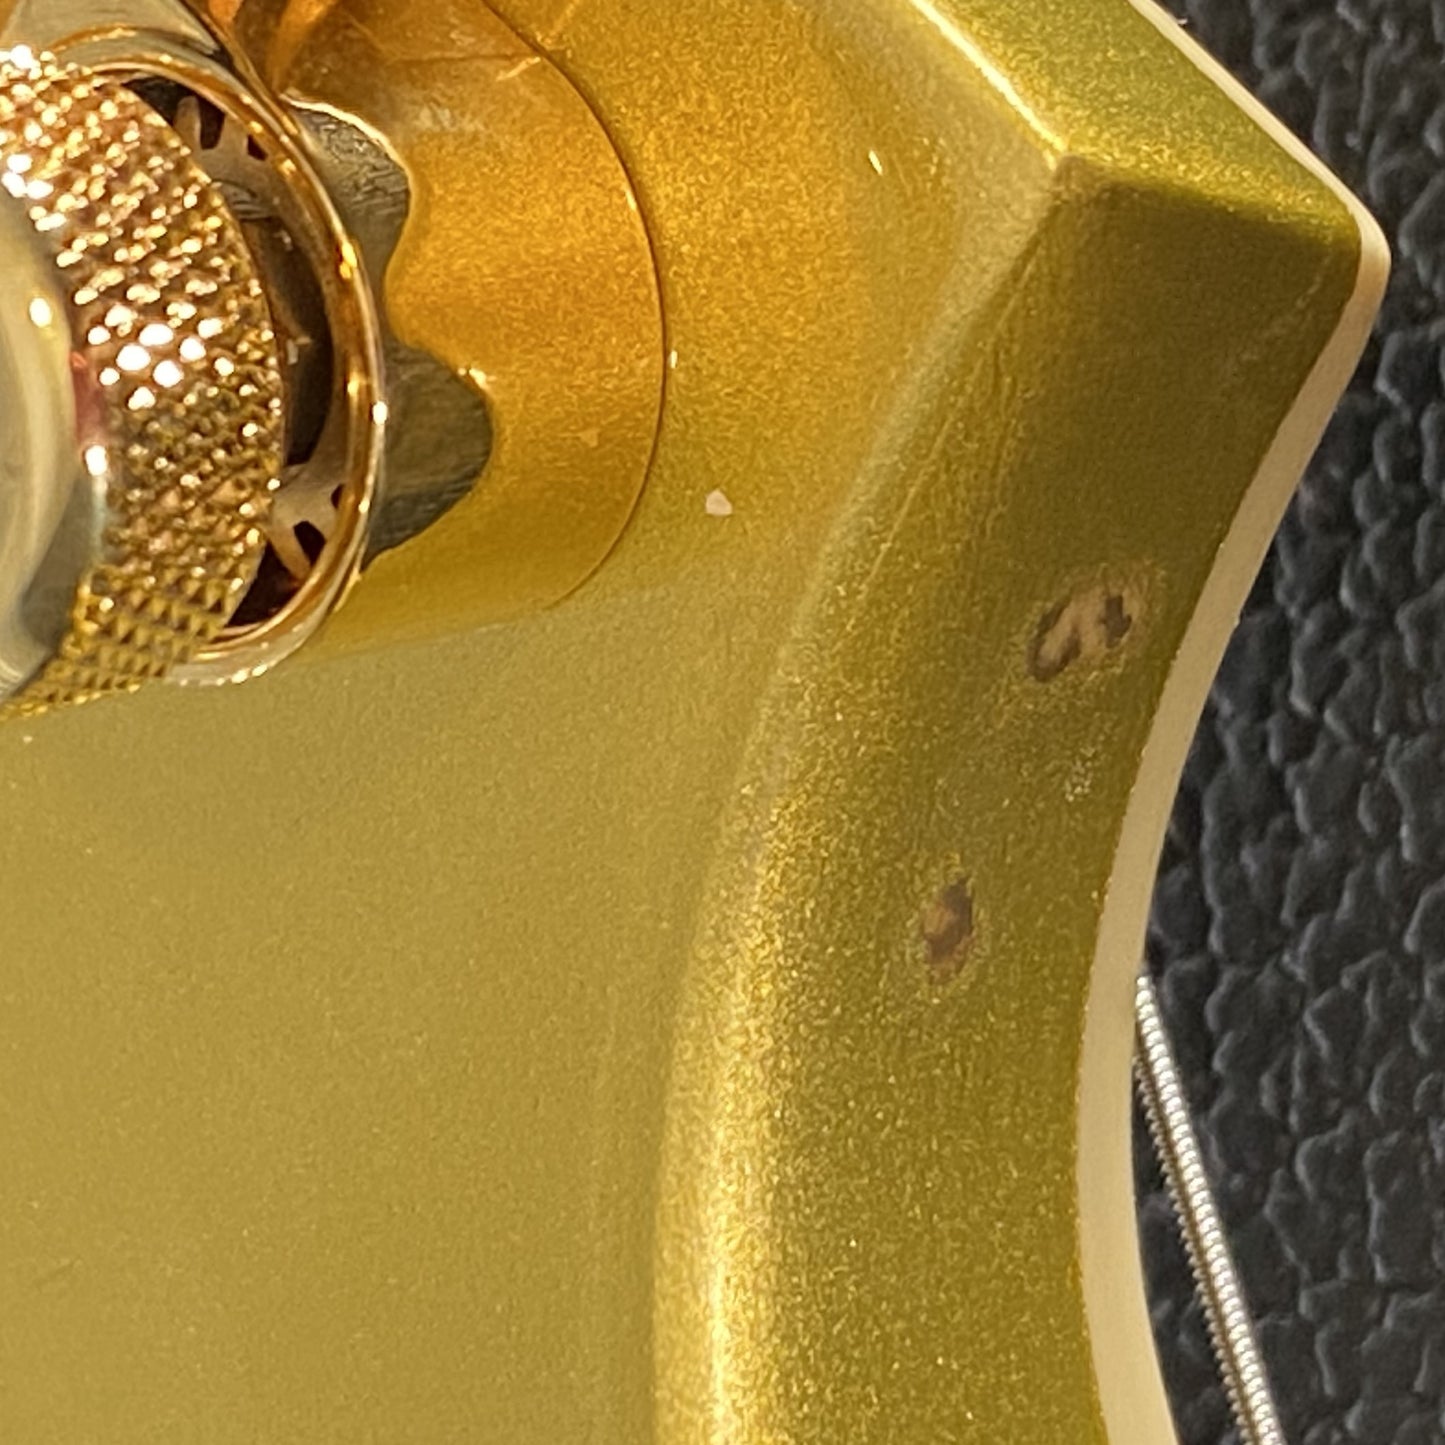 ESP LTD KH-V Kirk Hammett V Gold Sparkle EMG Guitar & Case #0917 B Stock